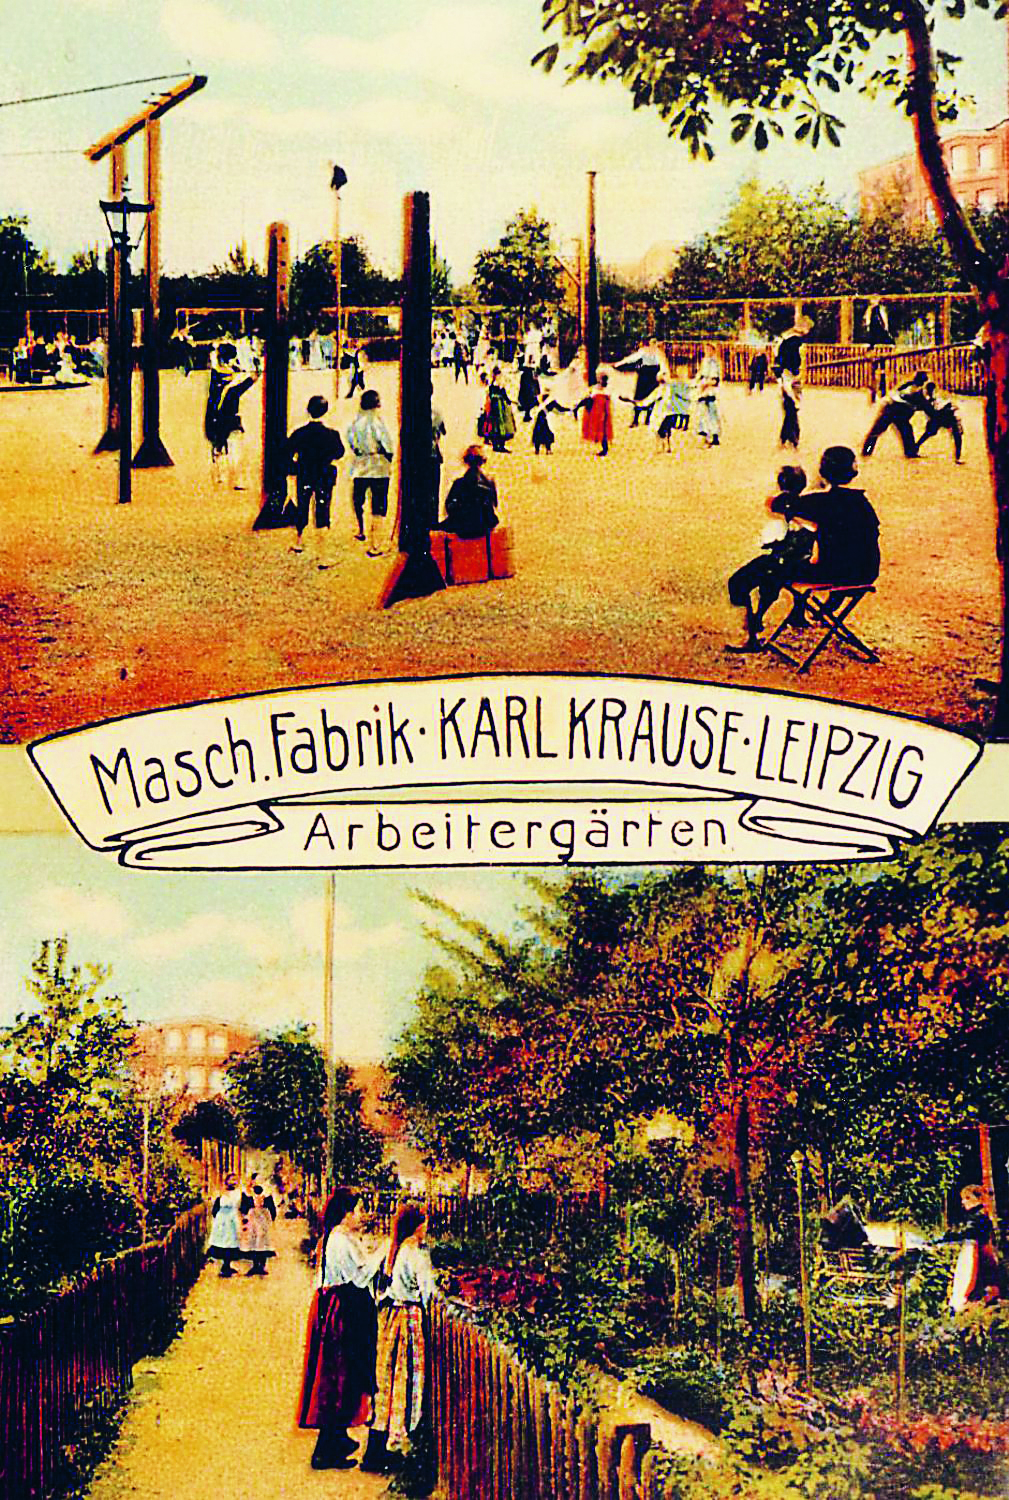 Arbeitergärten Maschinenfabrik Karl Krause